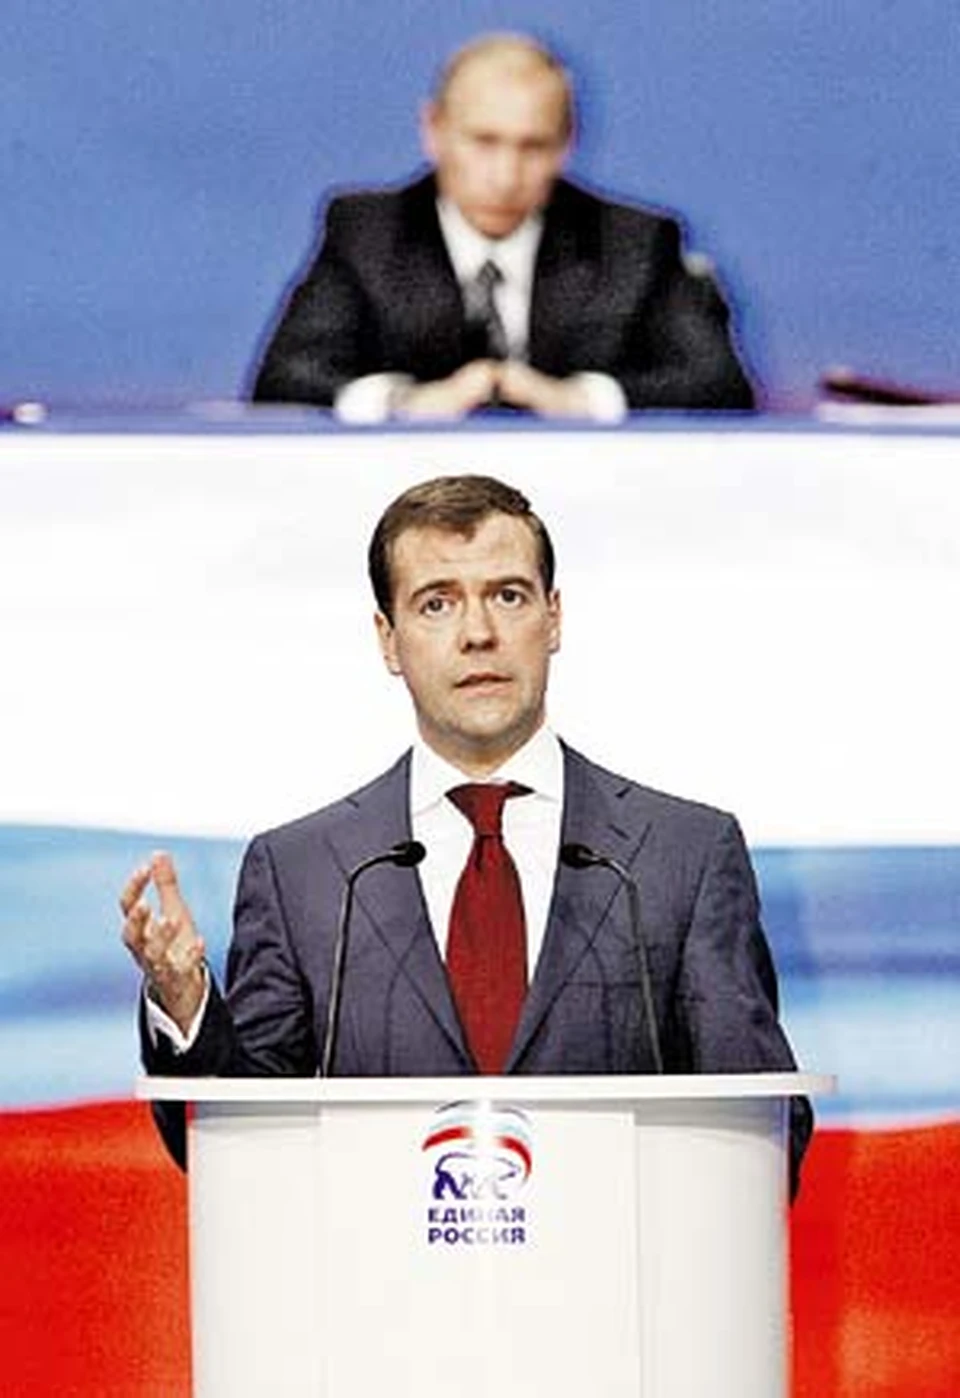 Путин видел, как Медведев из «хорошего юриста-эксперта» превращался в «волевого организатора». Теперь Путин с интересом наблюдает, как его подчиненный вживается в роль кандидата в президенты.